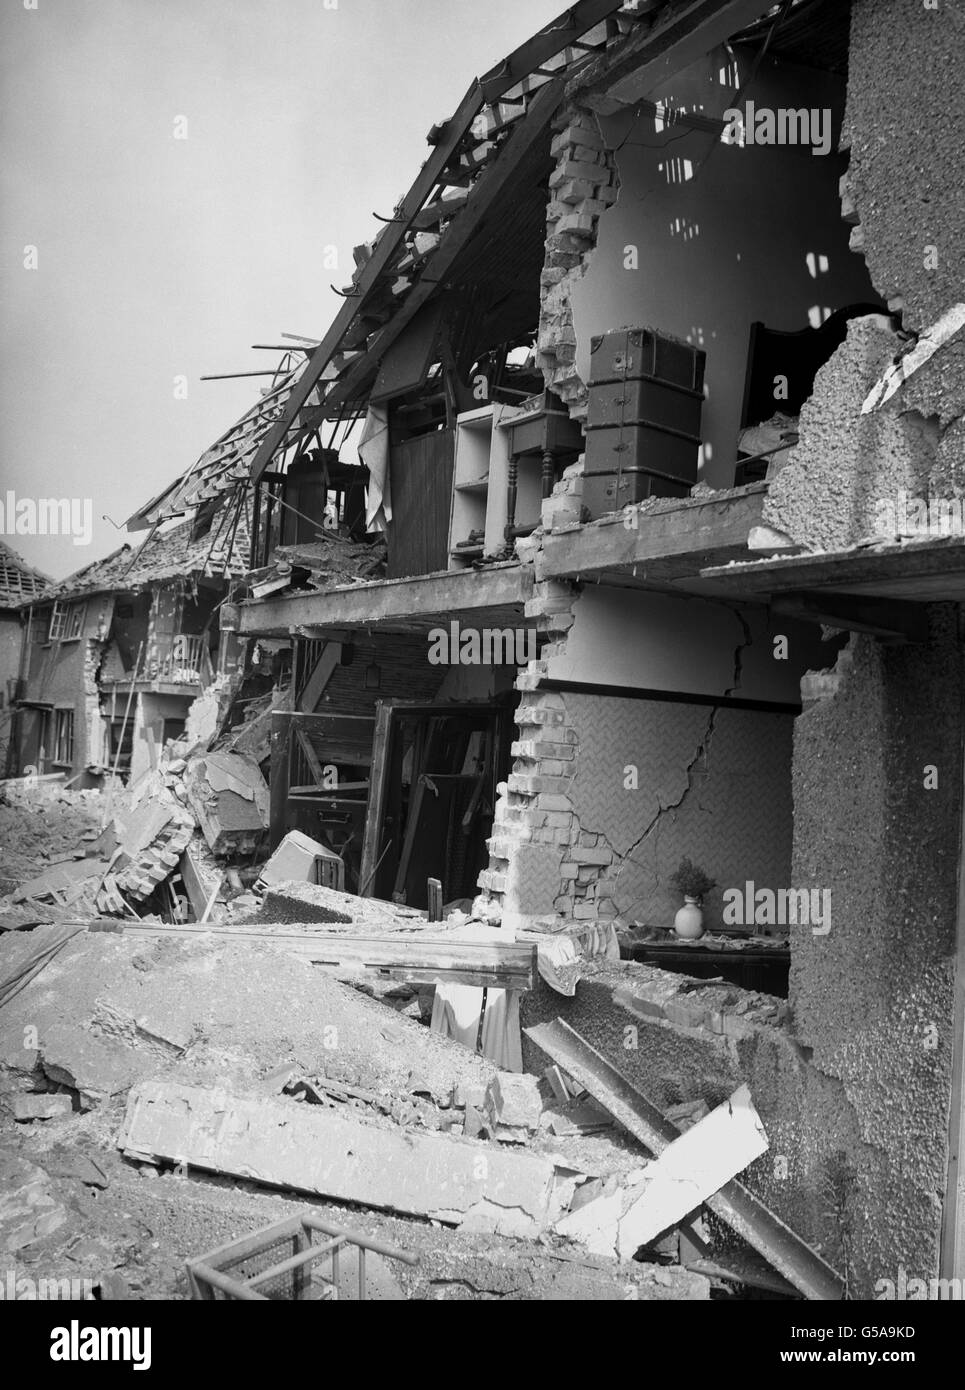 Schäden an Häusern in Südengland im Jahr 1945, nachdem eine deutsche V-2-Rakete gelandet war. Die Seite des Gebäudes wurde abgerissen, wodurch das Innere des Hauses freigelegt wurde. Der Ort ist aufgrund der Kriegszensur nicht identifiziert. Bild Teil der PA Zweiten Weltkrieg Sammlung. Stockfoto